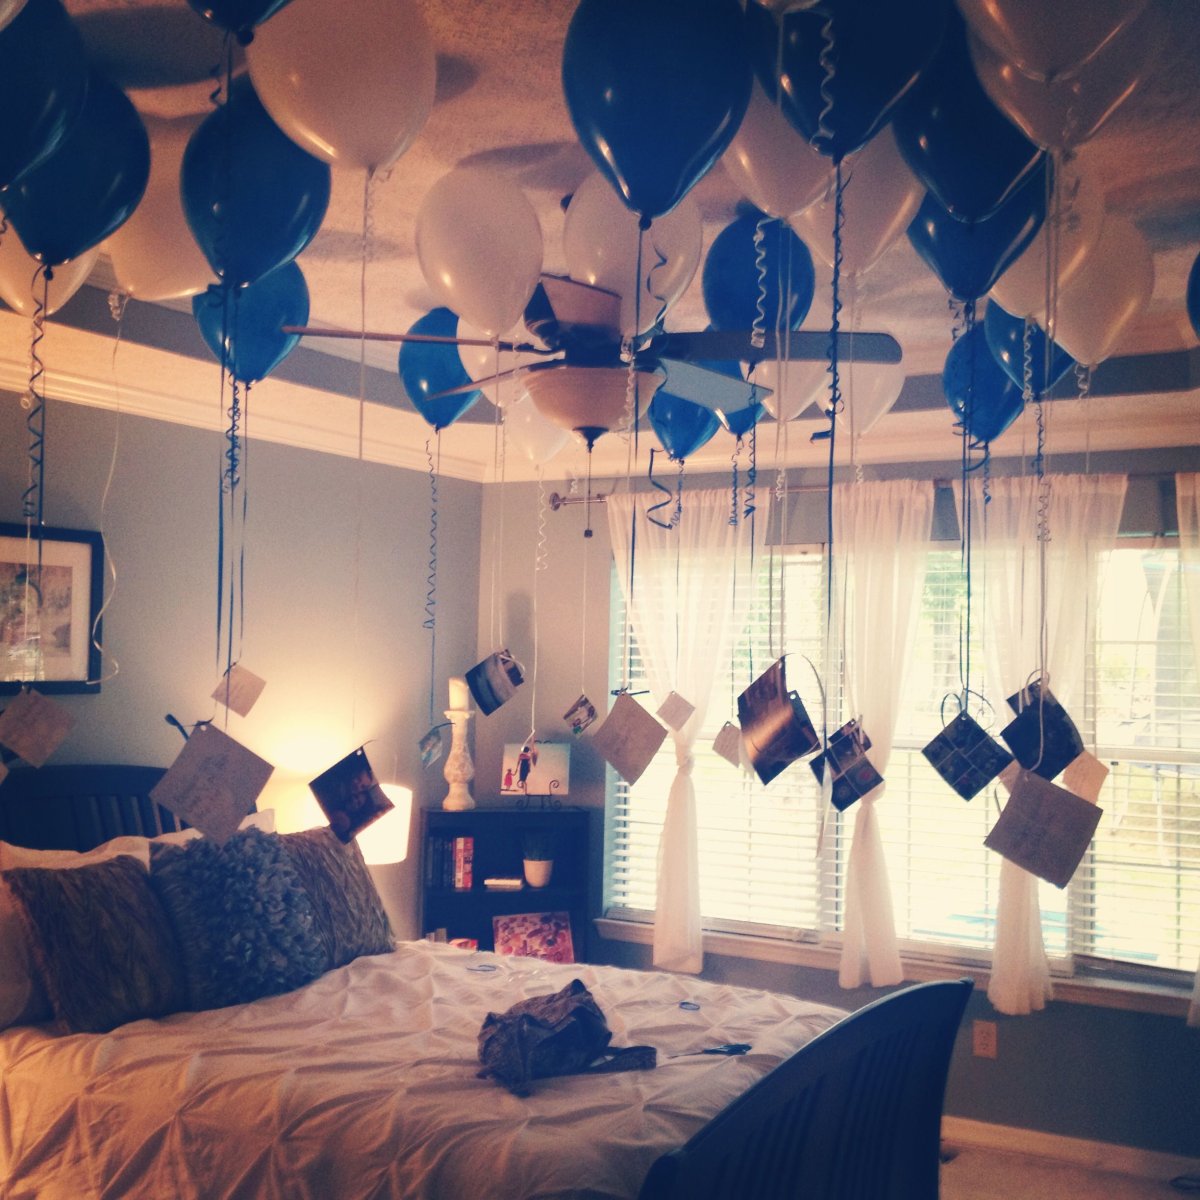 Как украсить комнату на день рождения мужа